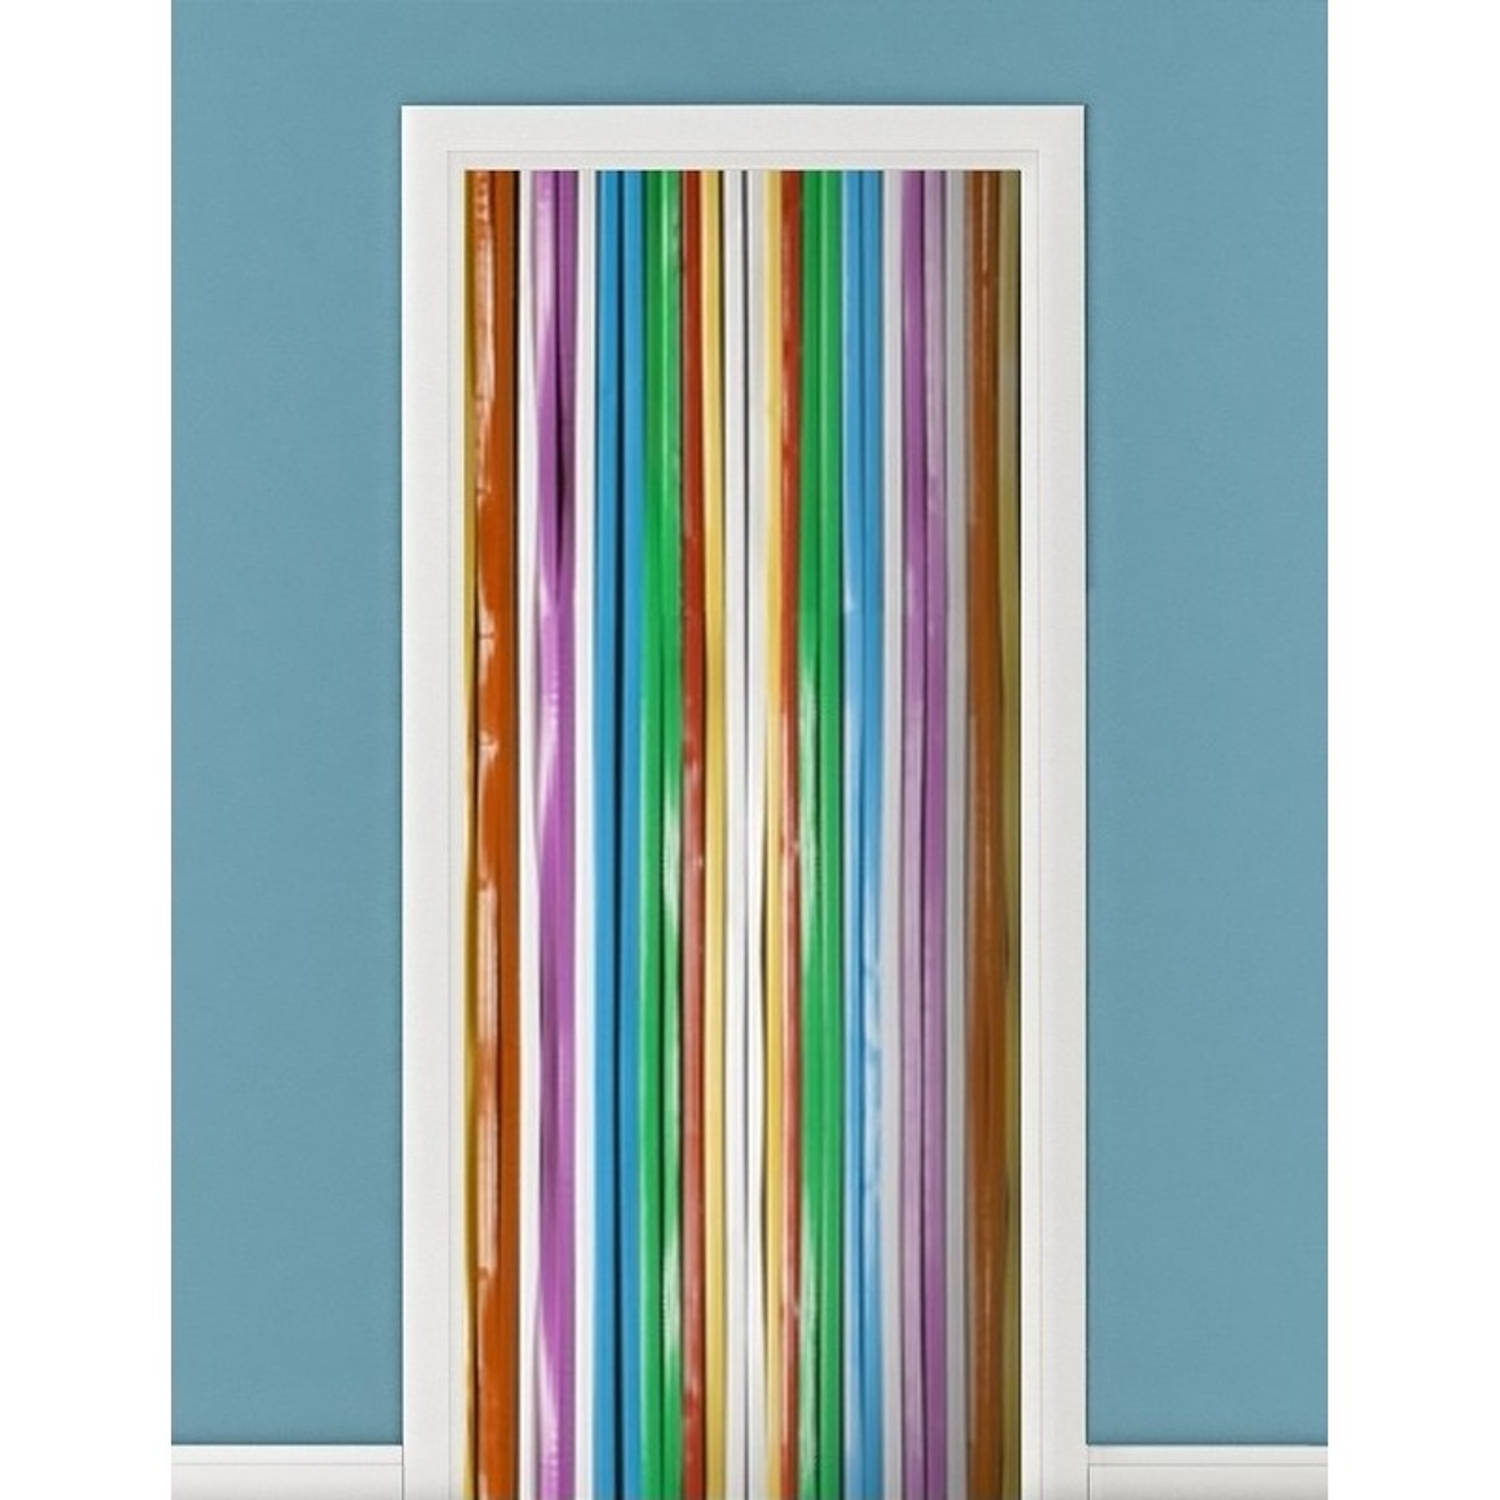 Vliegengordijn-deurgordijn multikleur 90 x 200 cm